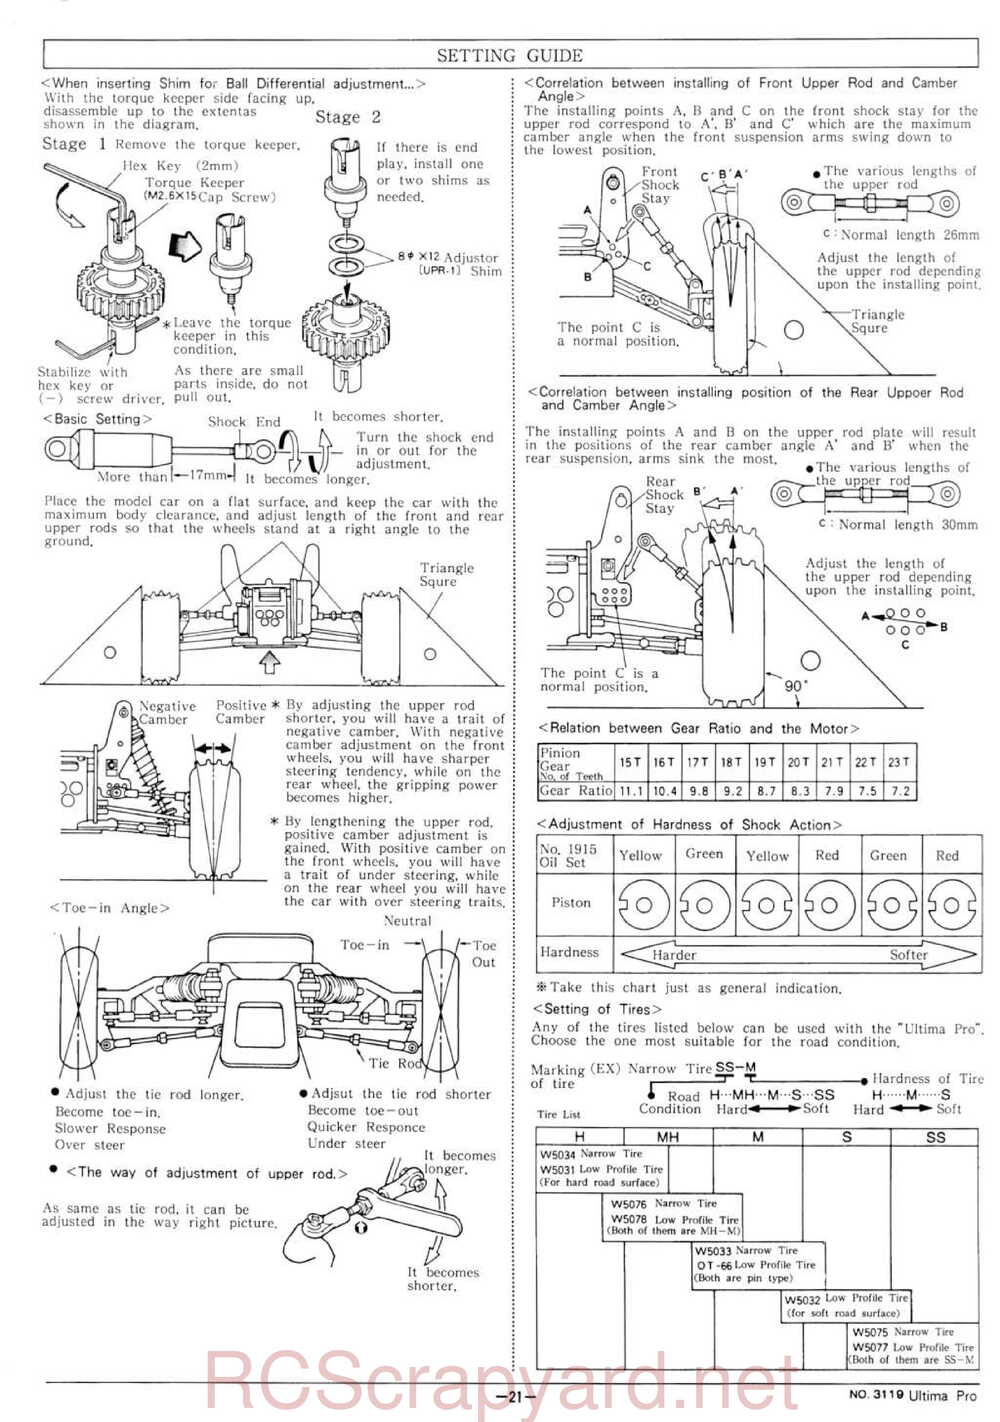 Kyosho - 3119 - Ultima-Pro XL - Manual - Page 21